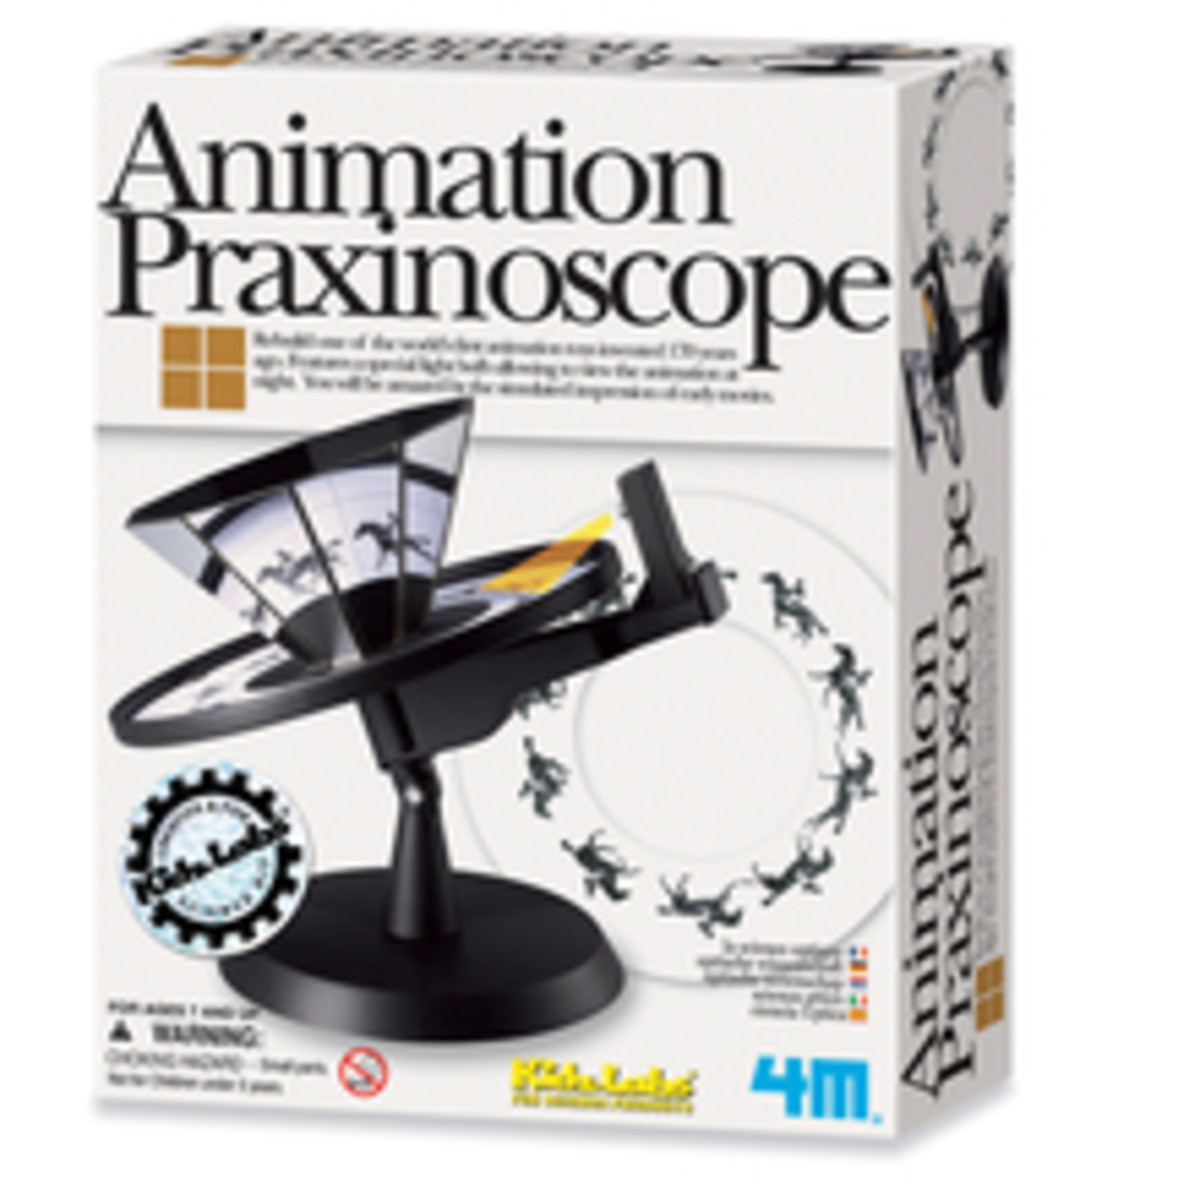 Animation Praxinoscope